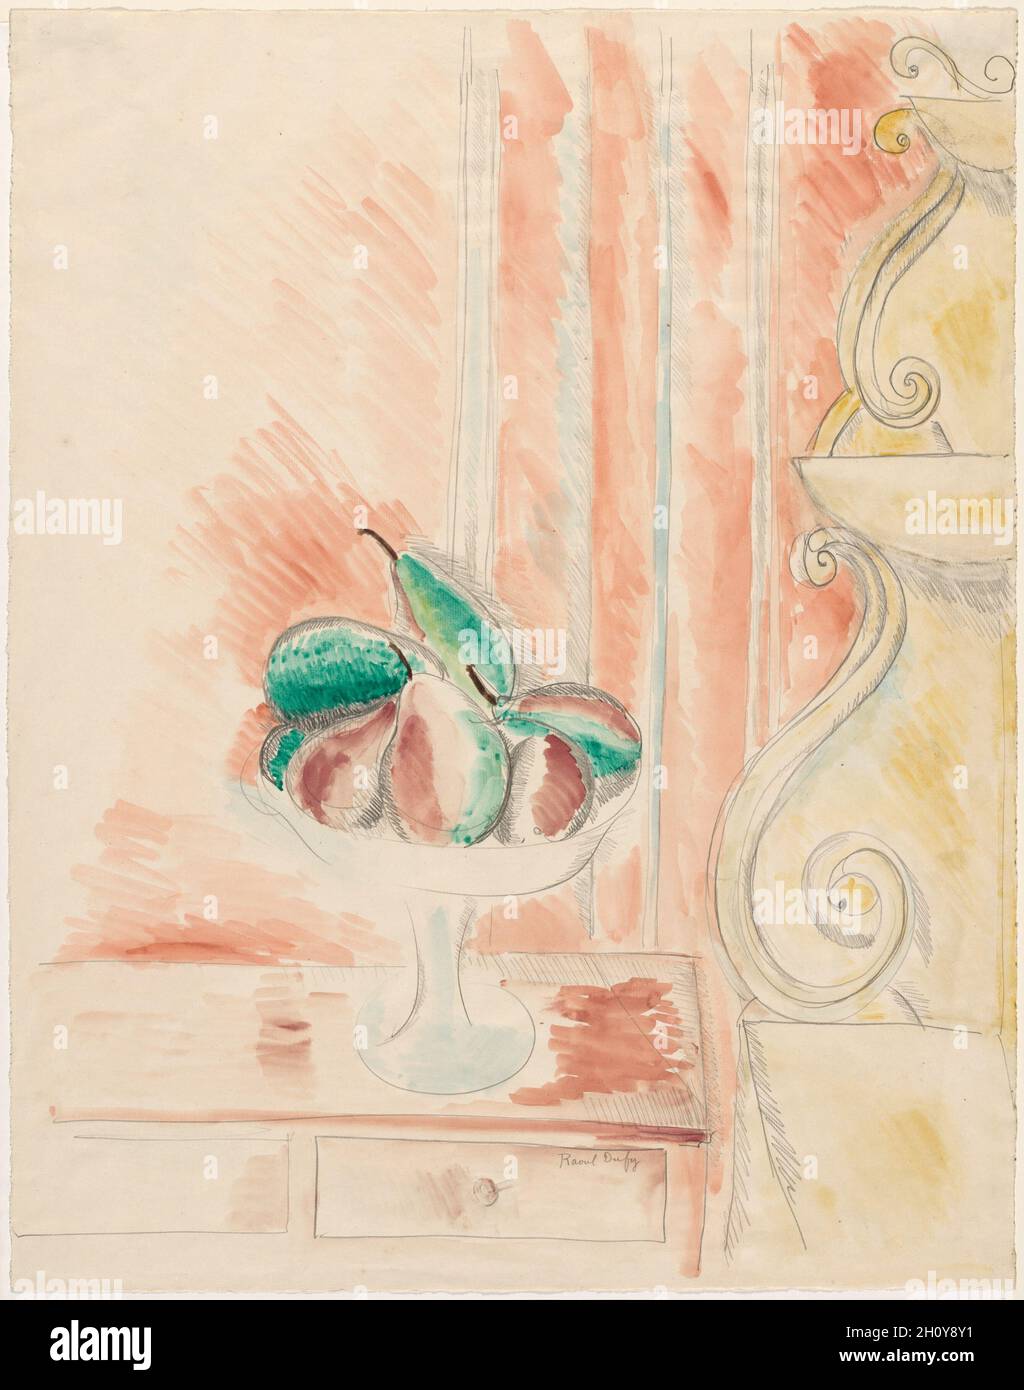 Stillleben, erste Hälfte 1900er Jahre. Raoul Dufy (Französisch, 1877-1953). Graphit und Aquarell; Blatt: 64.9 x 51.1 cm (25 9/16 x 20 1/8 Zoll). Stockfoto